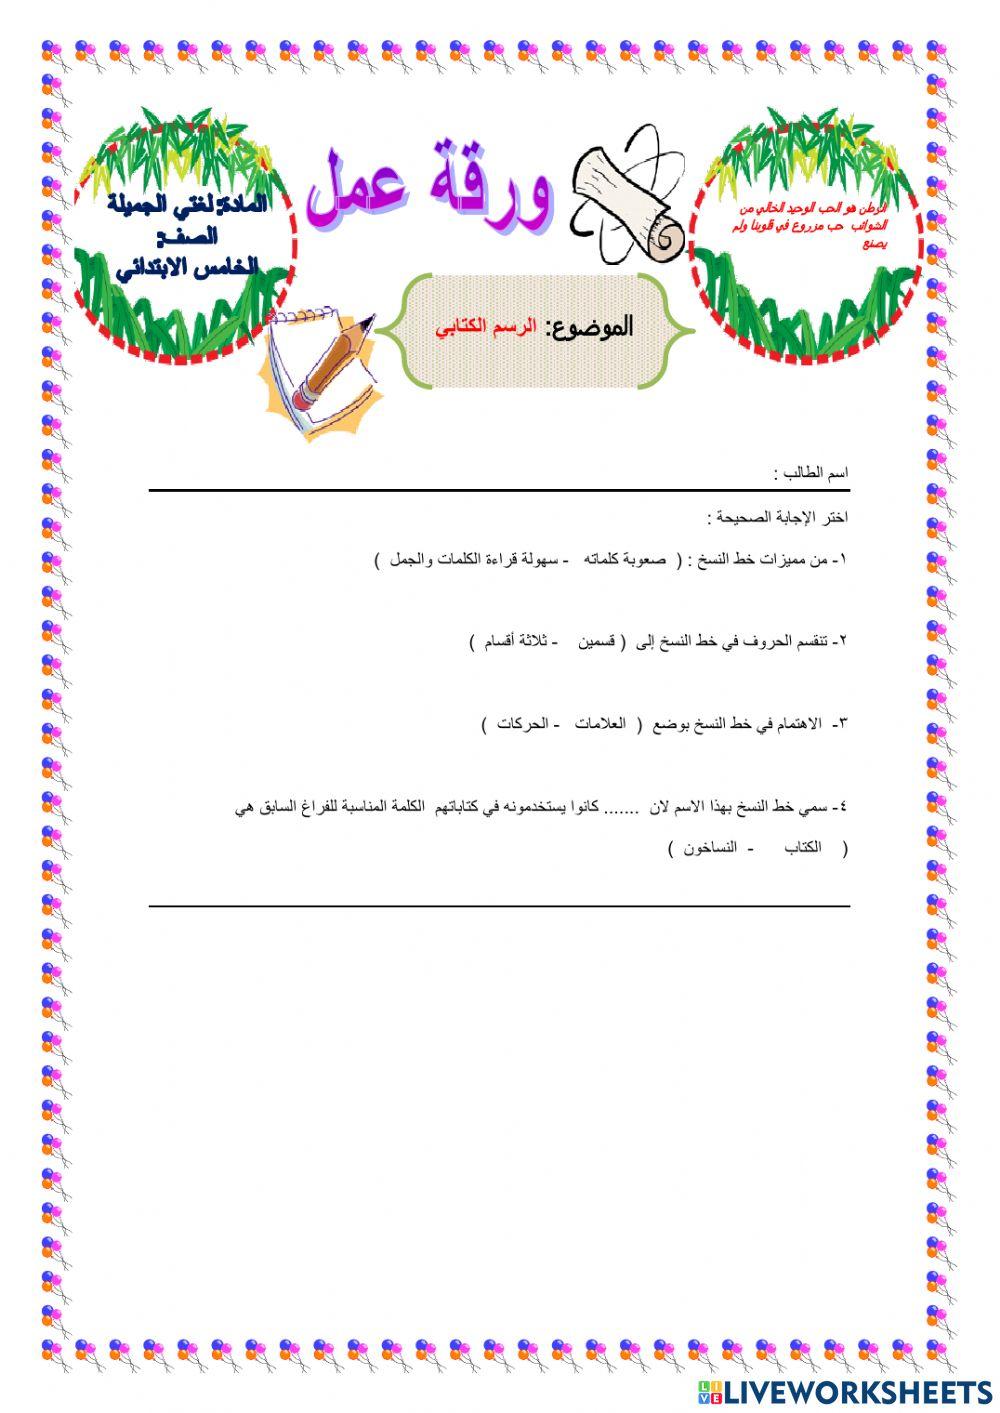 السعودية online activity for خامس | Live Worksheets